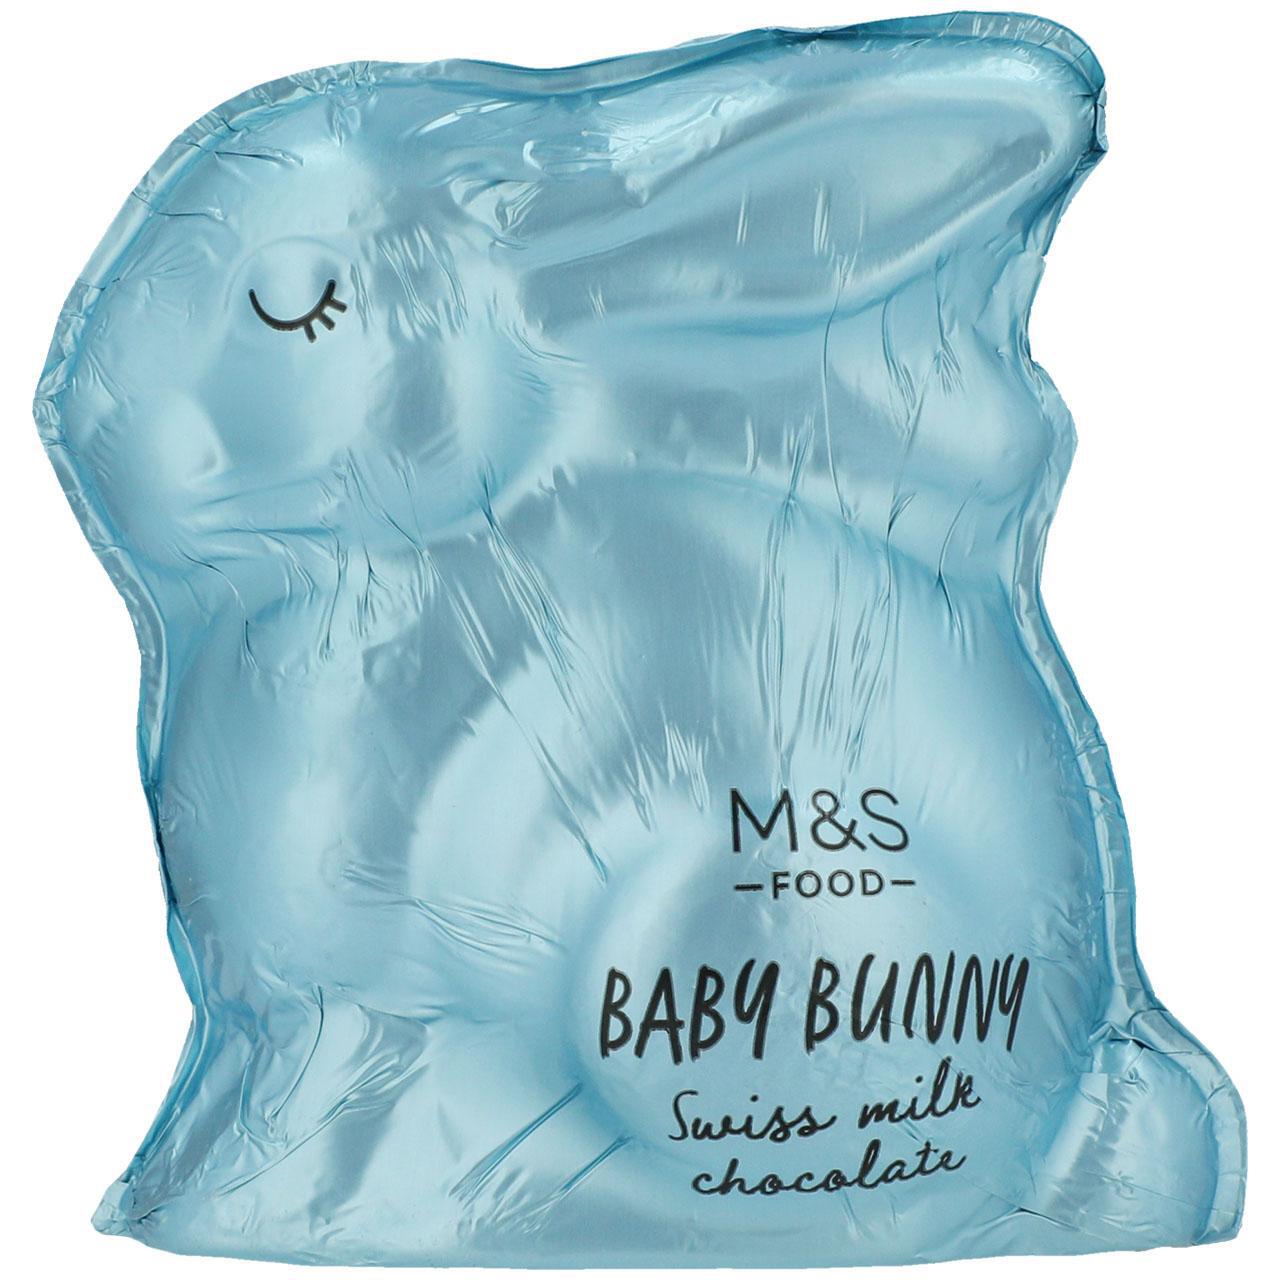 M&S Swiss Milk Chocolate Baby Bunny 100g